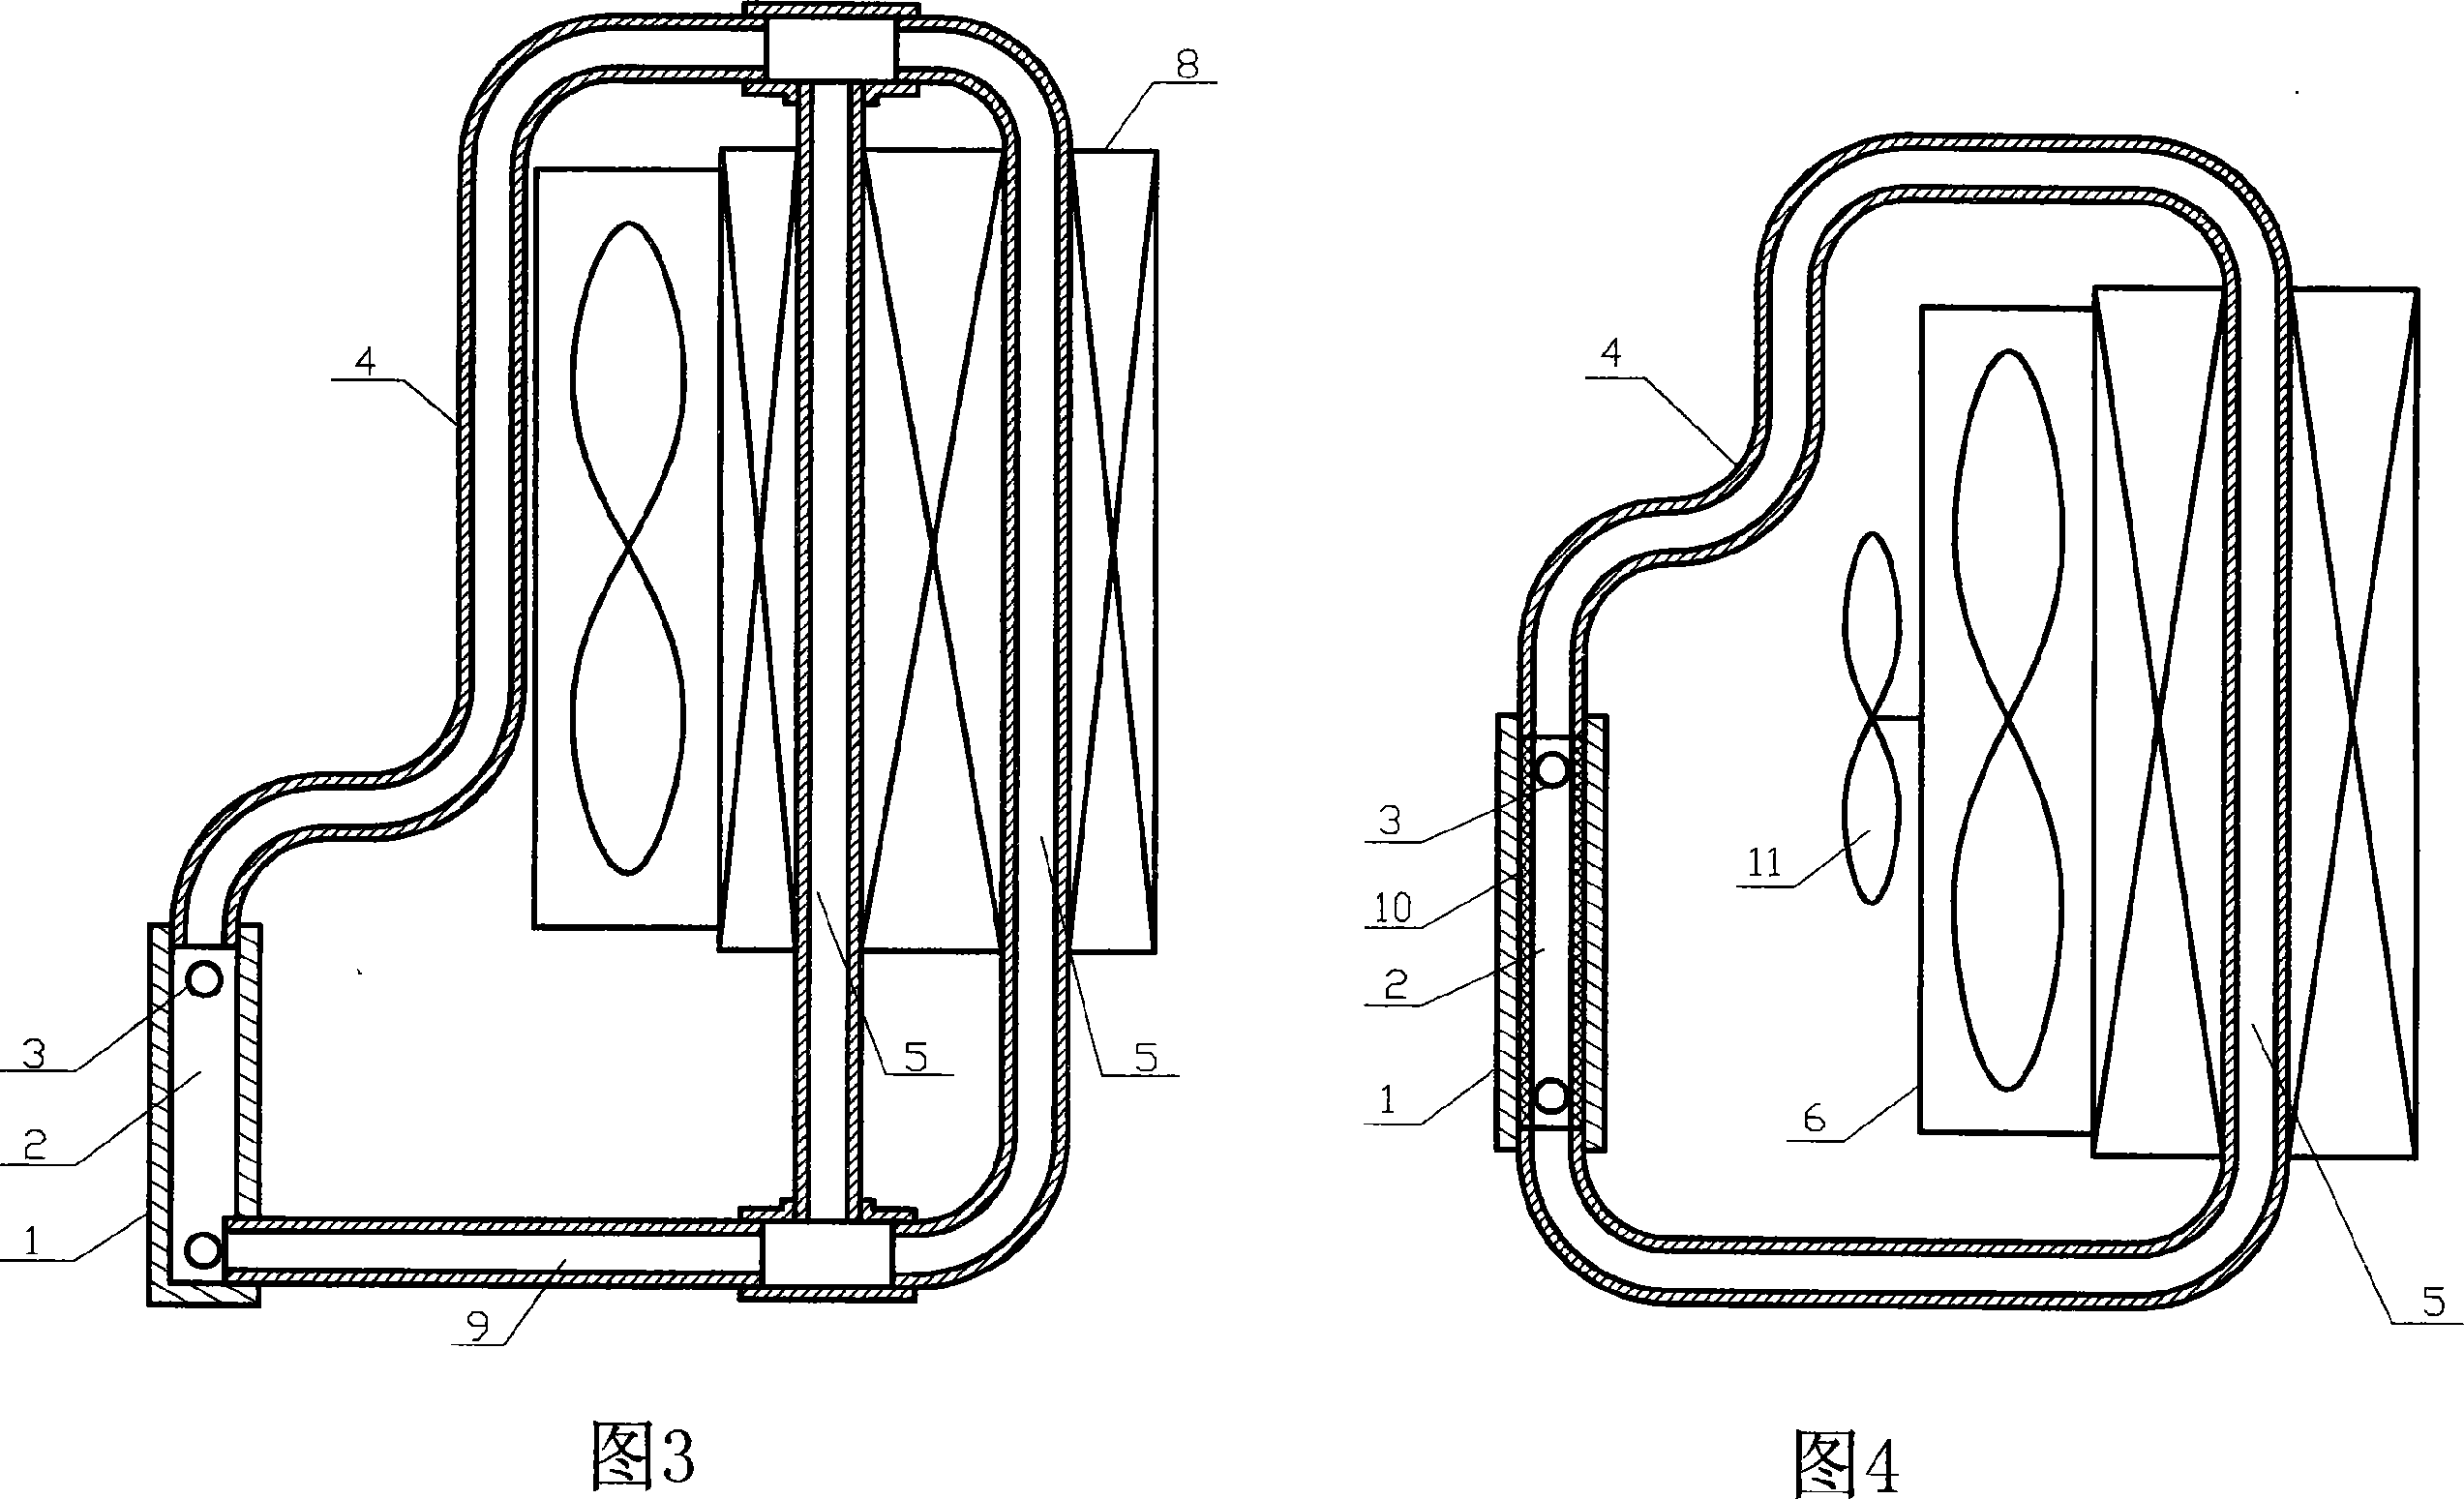 Circulating hot tube type radiator